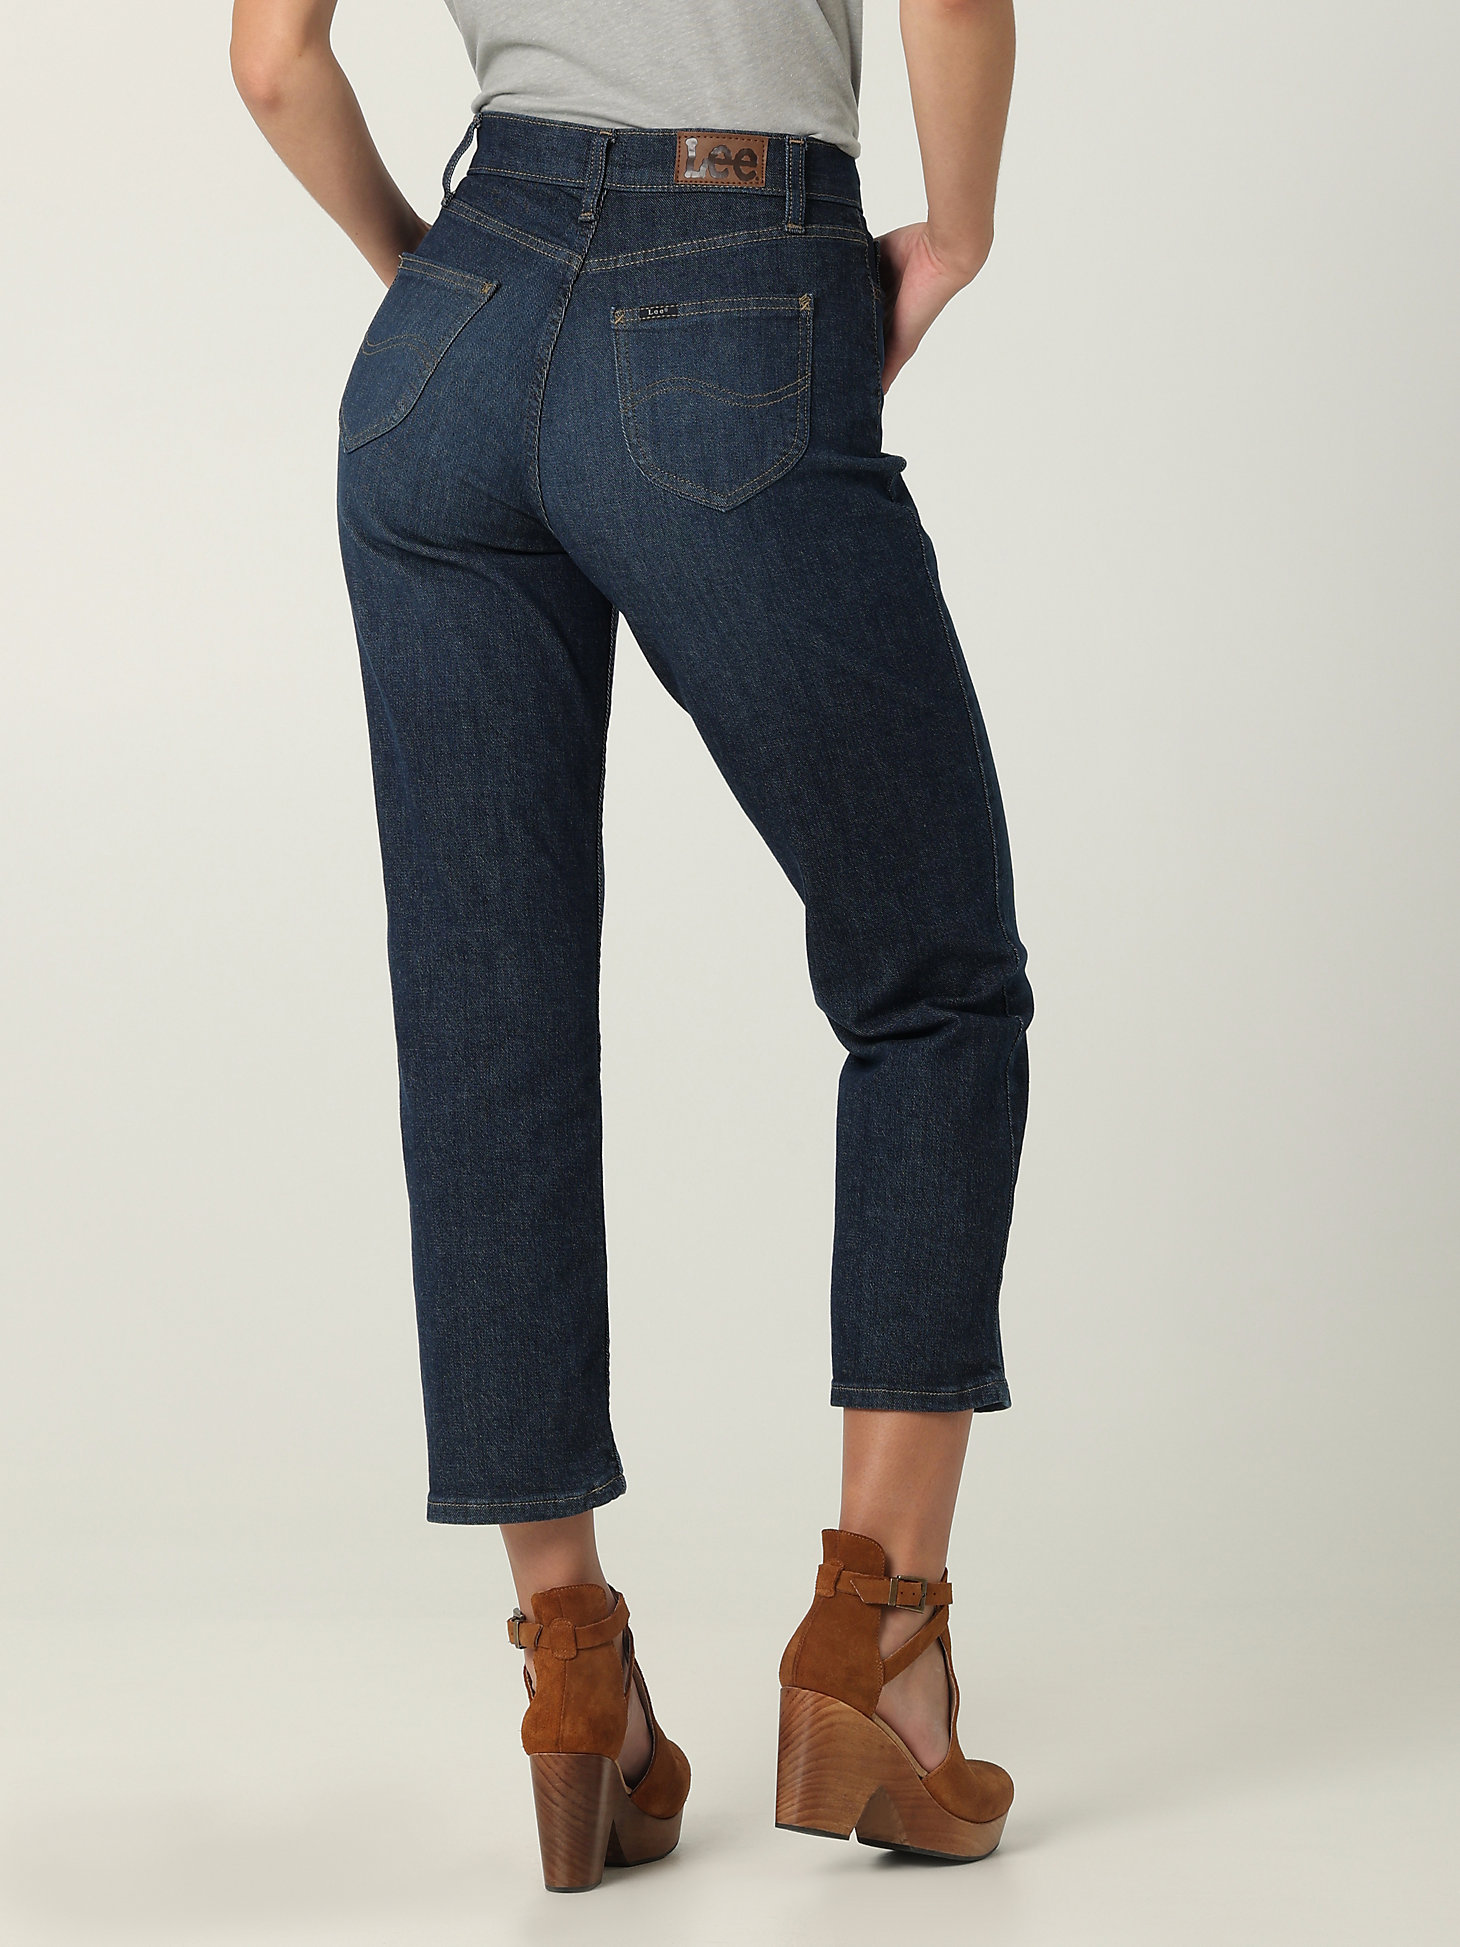 Women's Legendary High Rise Vintage Straight Jean in Inner Strength alternative view 1